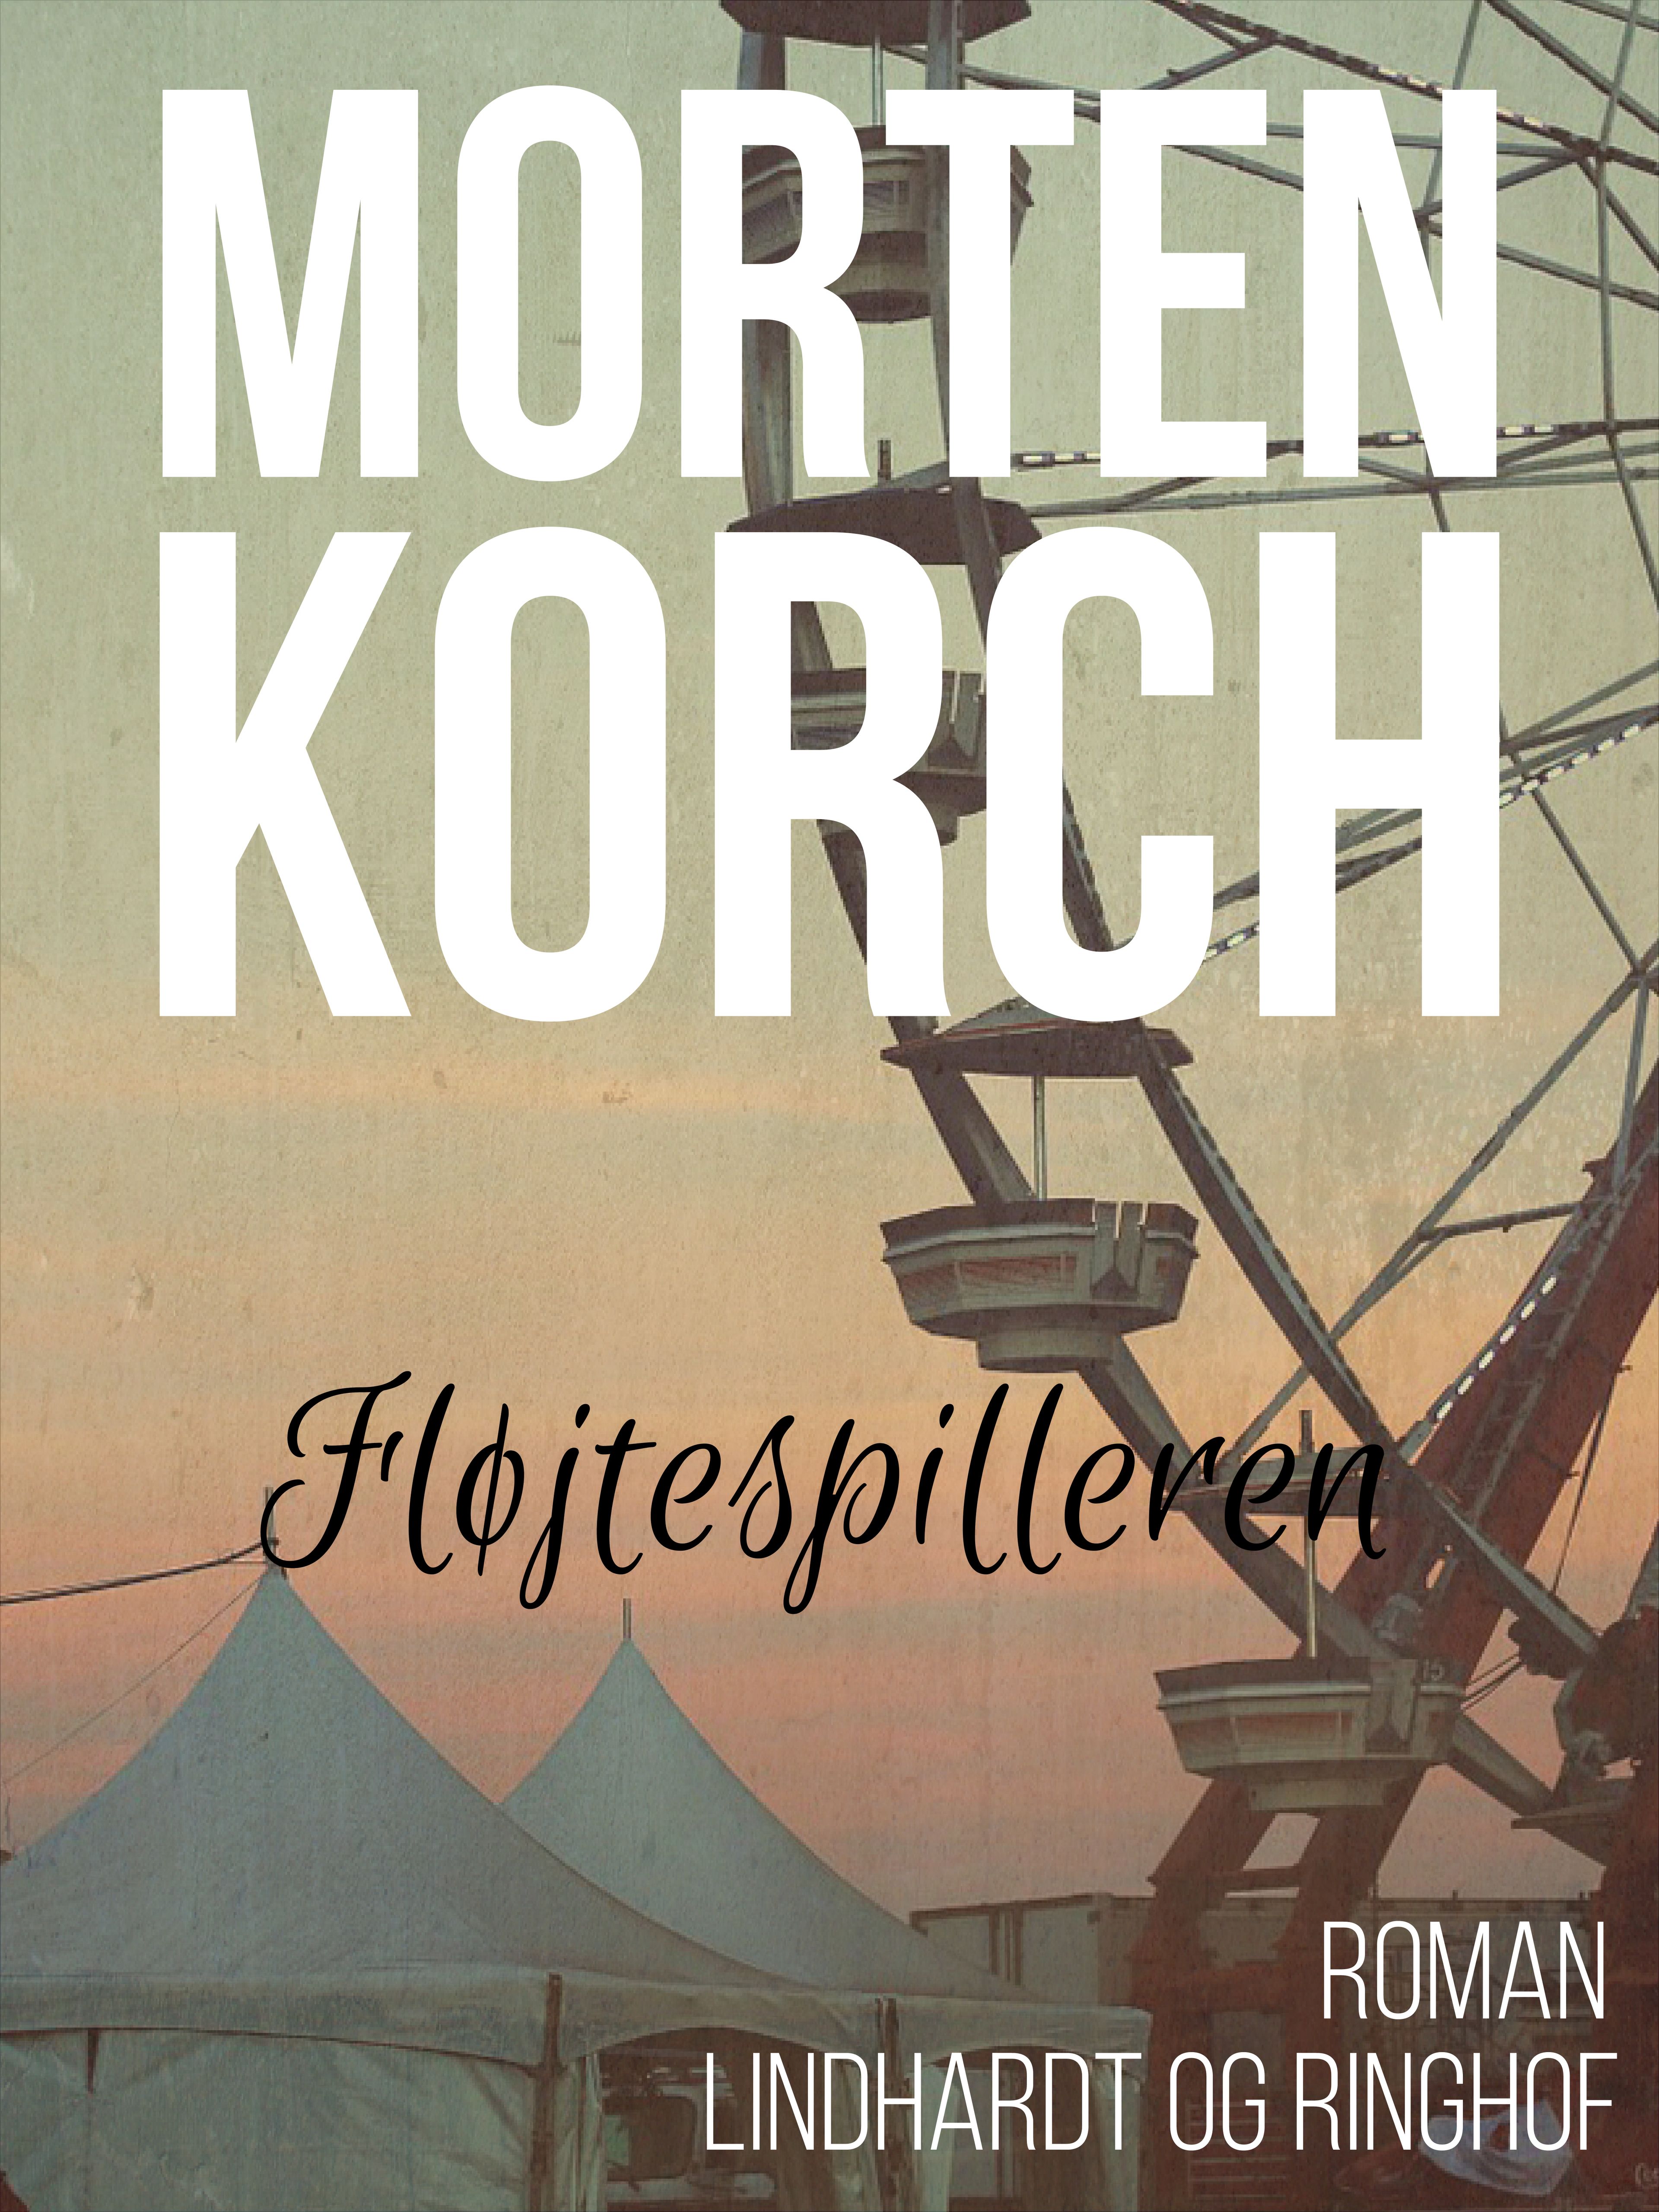 Fløjtespilleren, ljudbok av Morten Korch